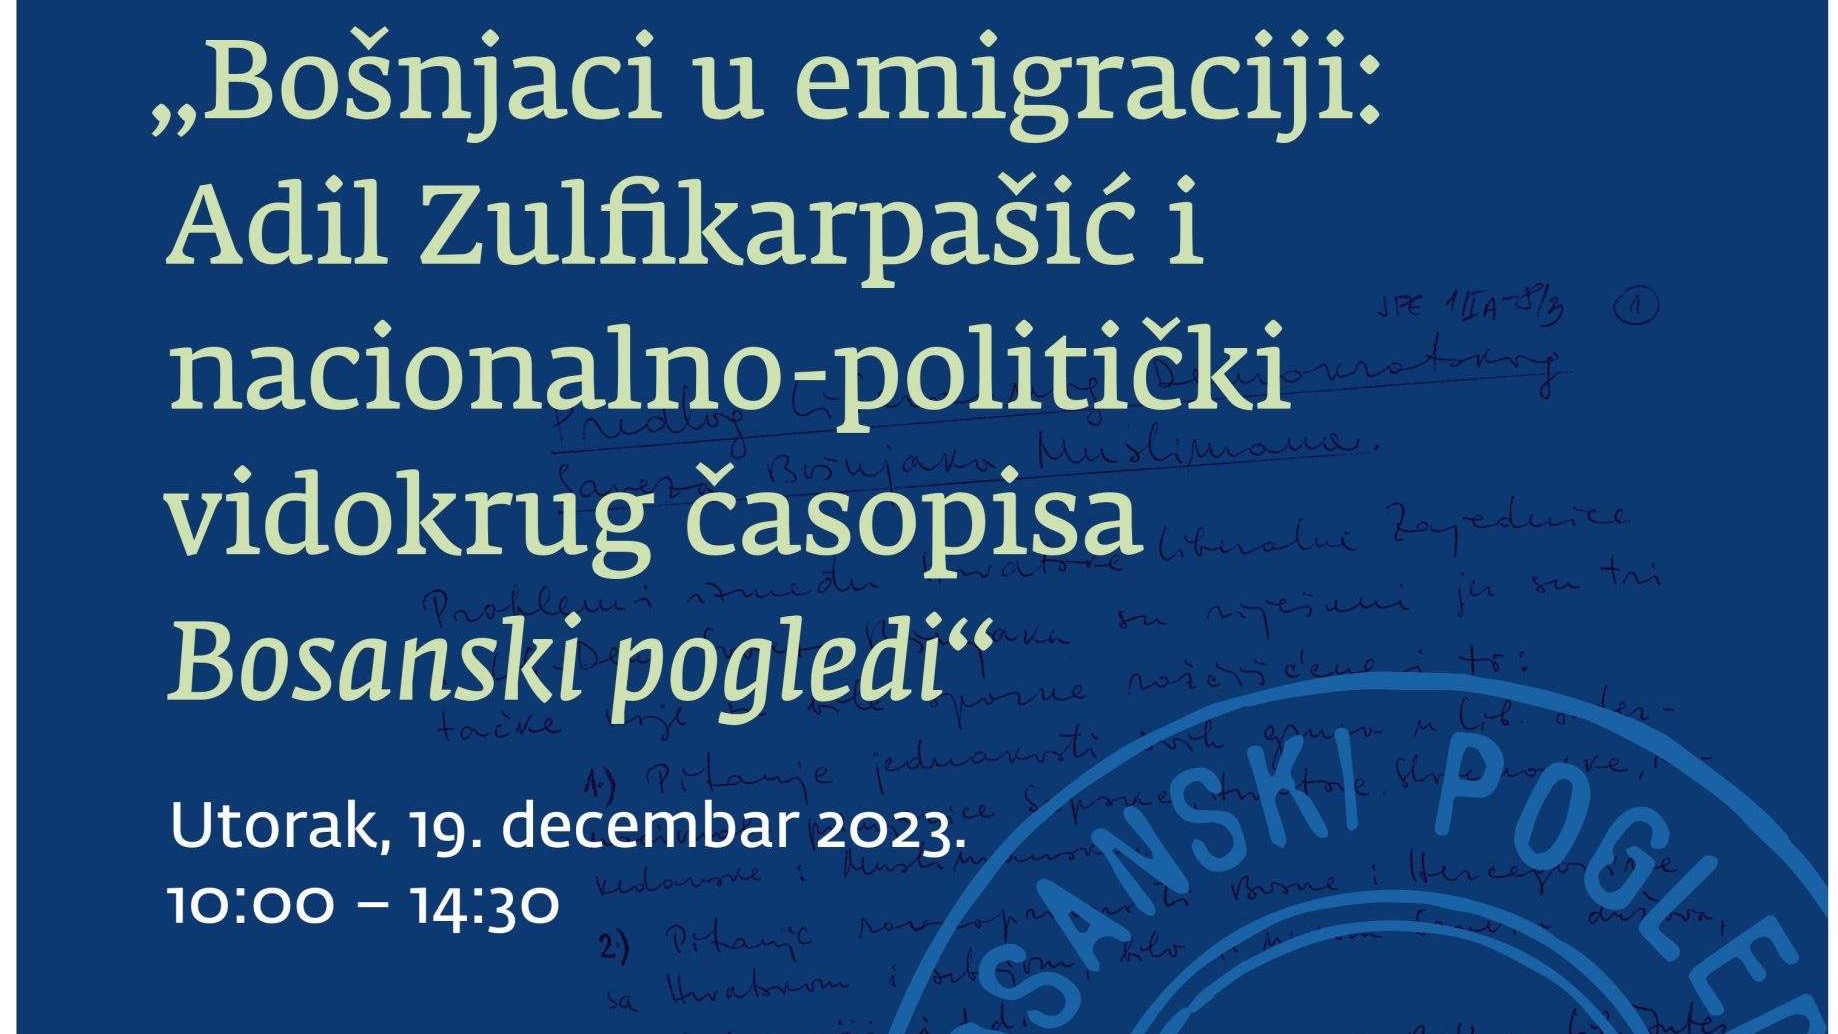 Sutra simpozij "Bošnjaci u emigraciji: Adil Zulfikarpašić i nacionalno-politički vidokrug časopisa Bosanski pogledi"